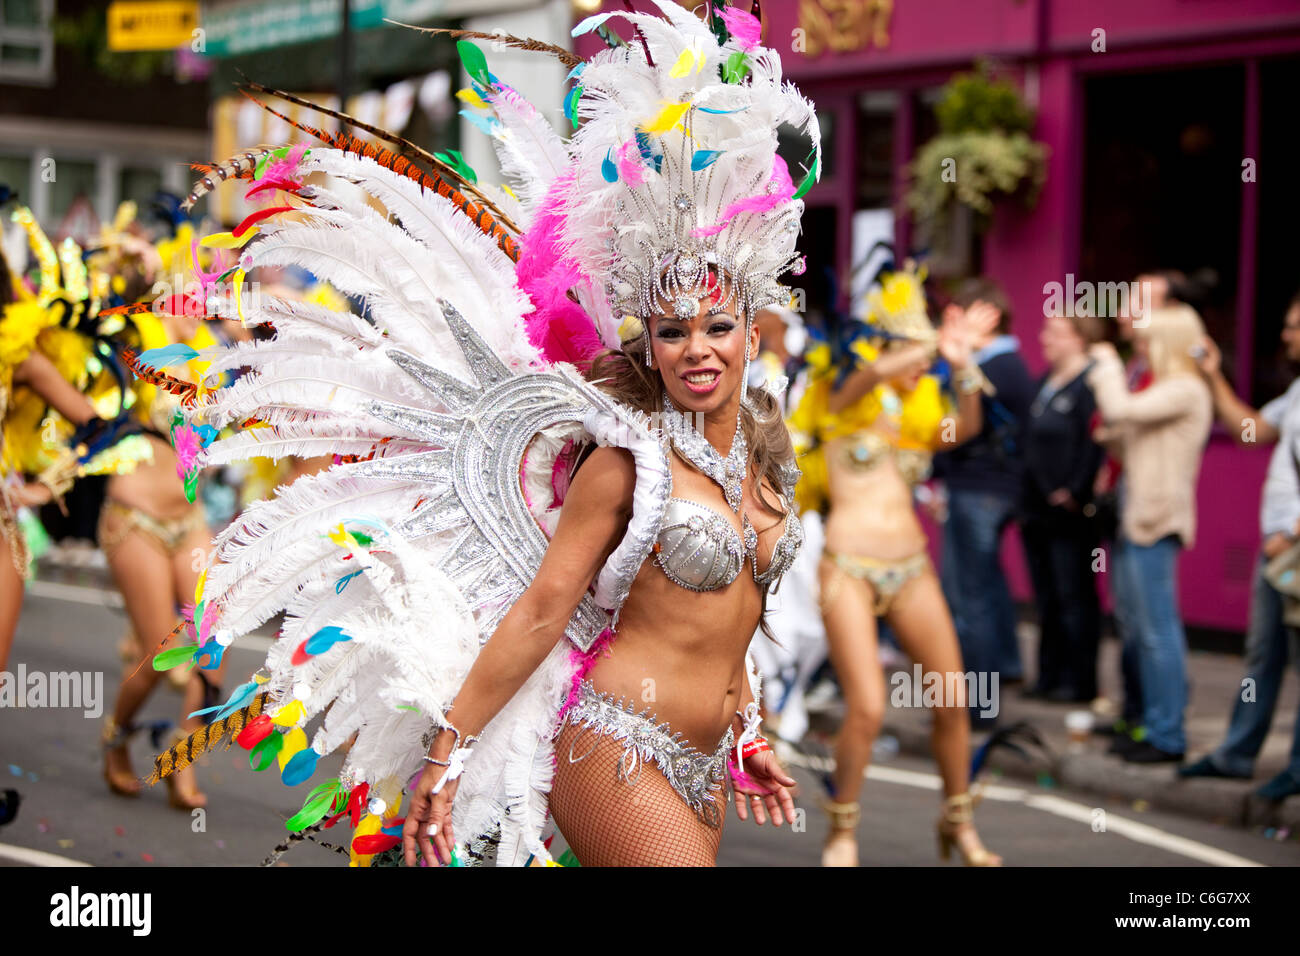 Danseuse de l'école de samba au Notting Hill Carnival, Londres, Angleterre, Royaume-Uni. Banque D'Images